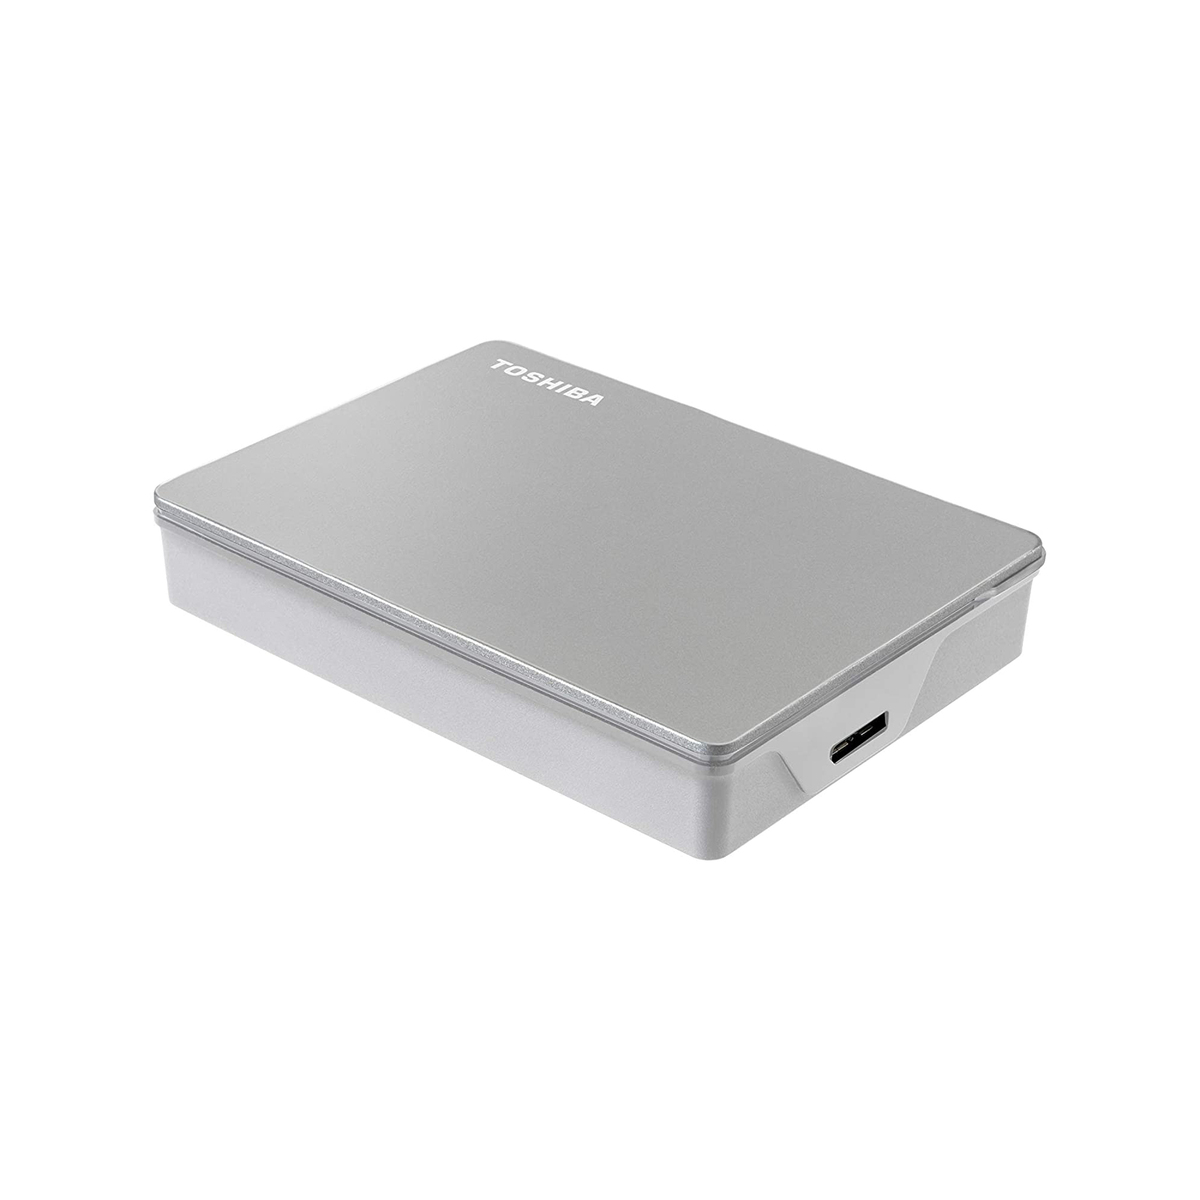 Toshiba Canvio Flex 4TB Portable External Hard Drive USB-C USB 3.0, Silver (HDTX140XSCCA)